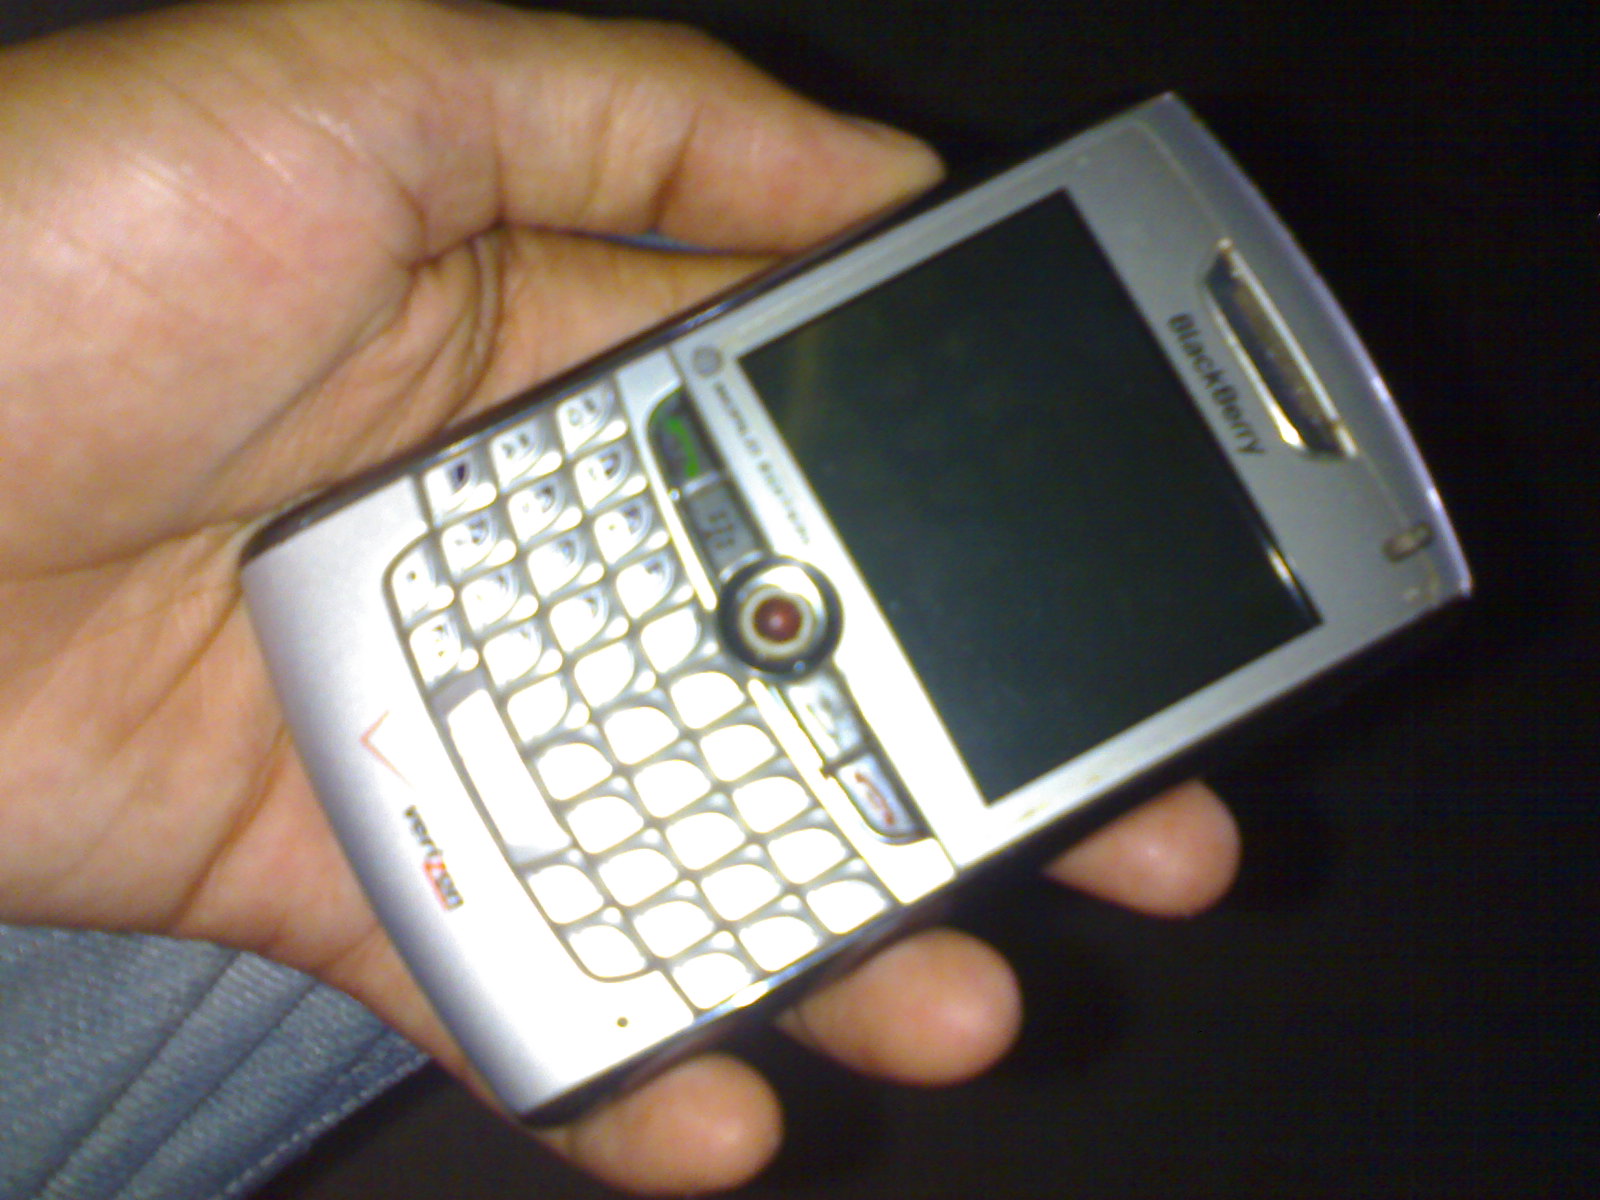 Blackberry 8830 large image 0